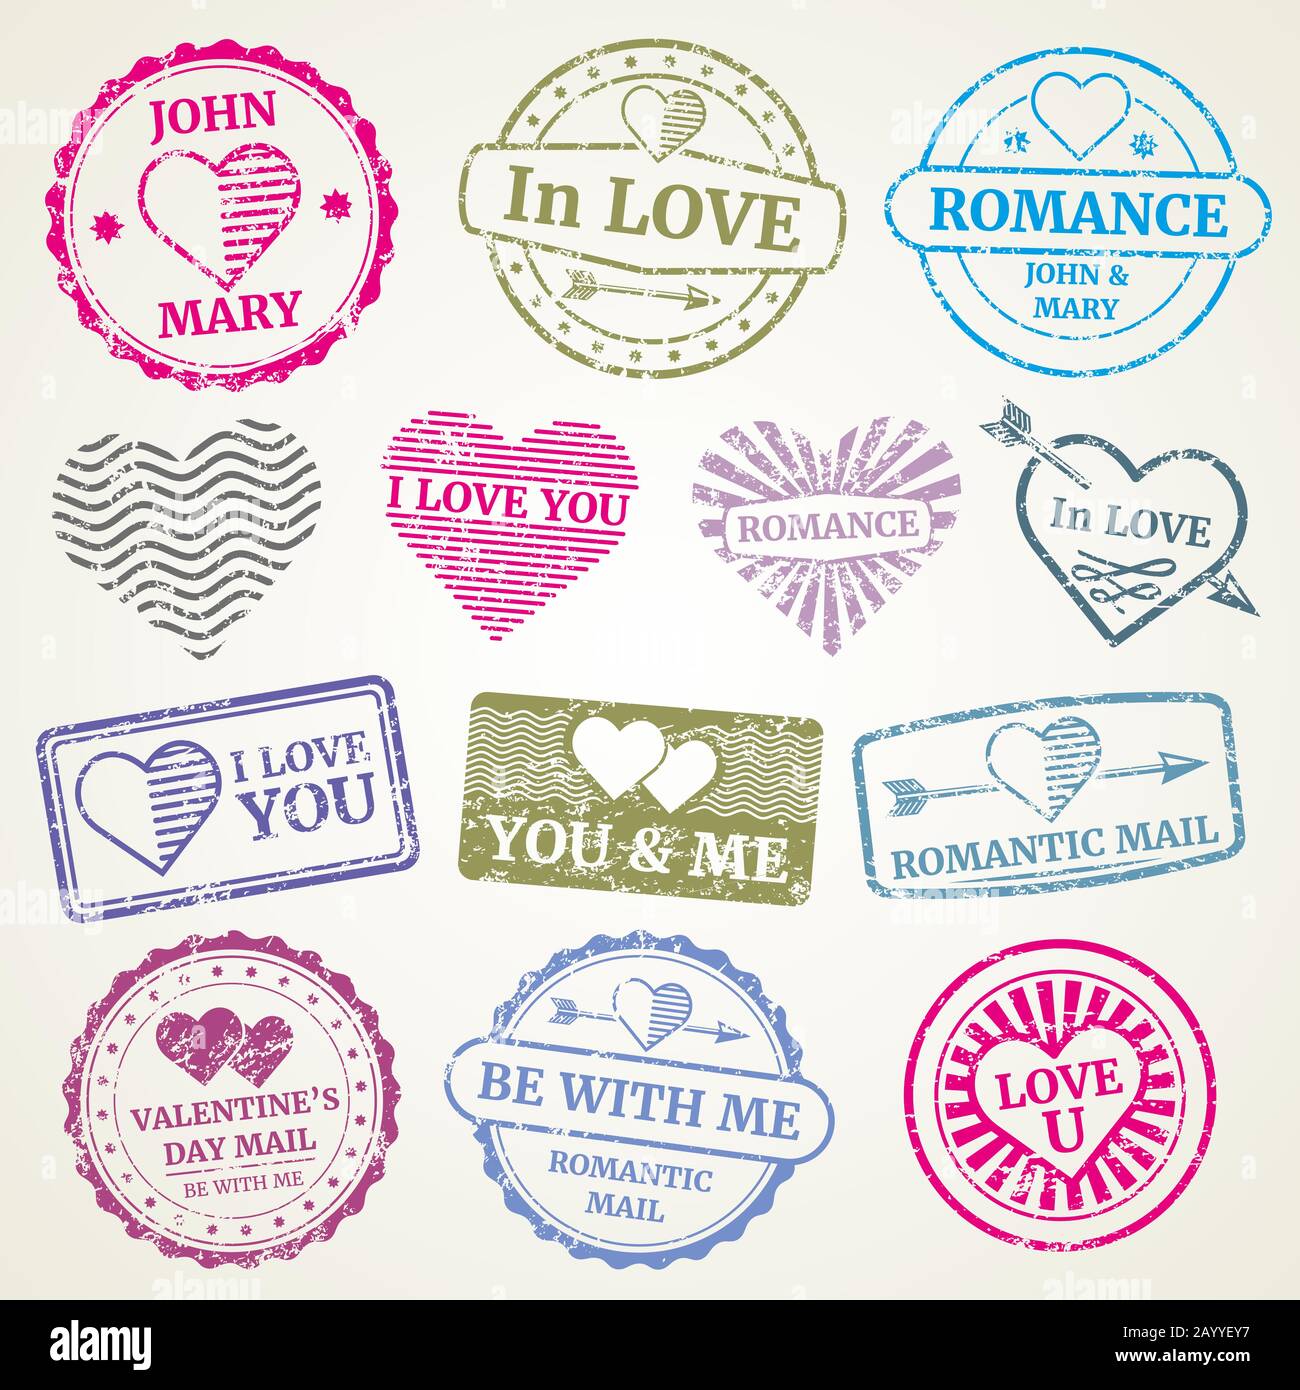 Romantischer Briefmarken-Vektor für Hochzeit und Valentinstag Postkarte, Einladungsdesign. Stempel in Form von Herz und Stempel für Postkartenillustration Stock Vektor